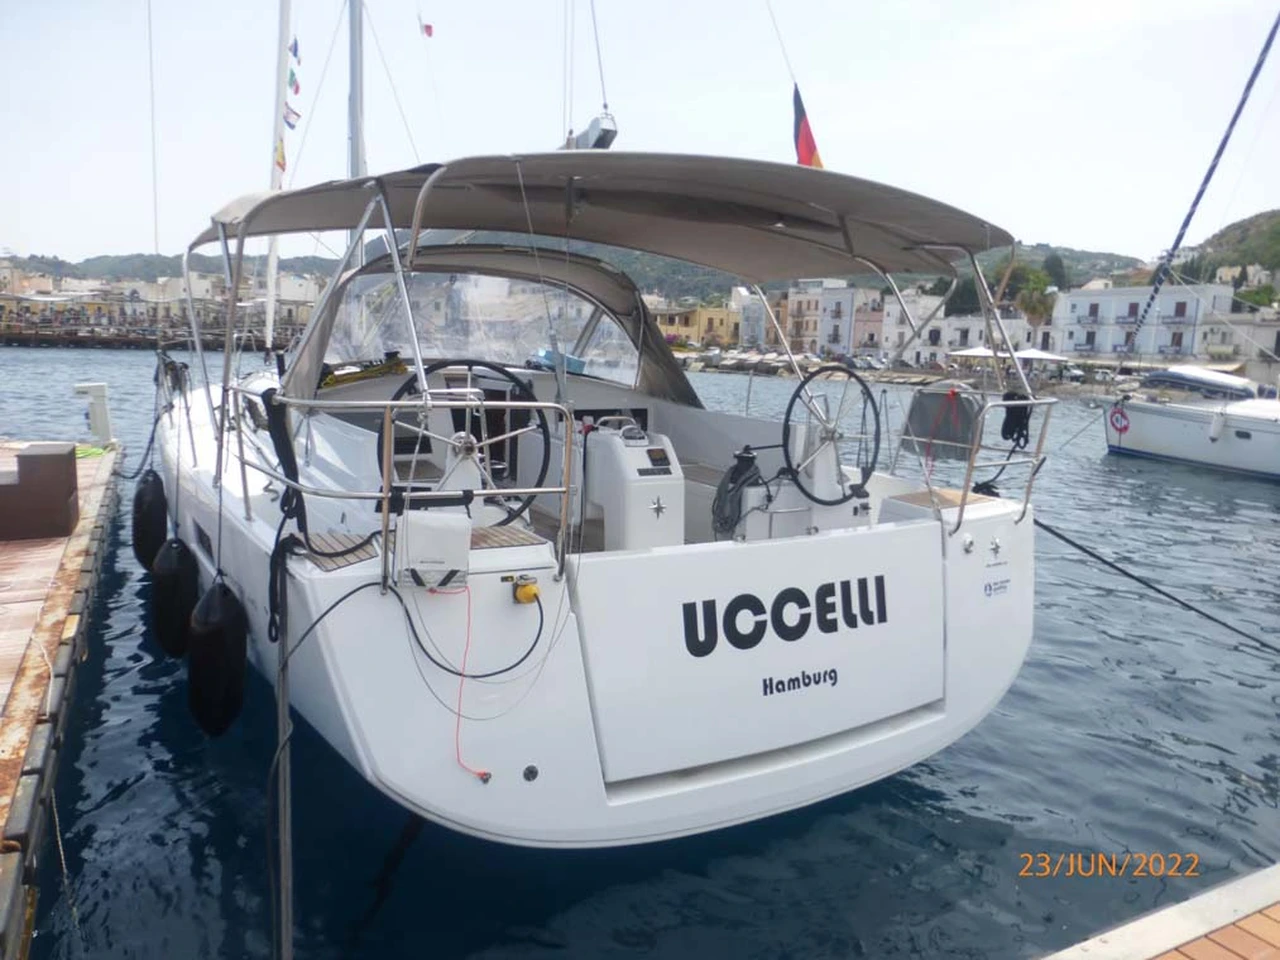 Sun Odyssey 440-Segelyacht Uccelli in Kroatien